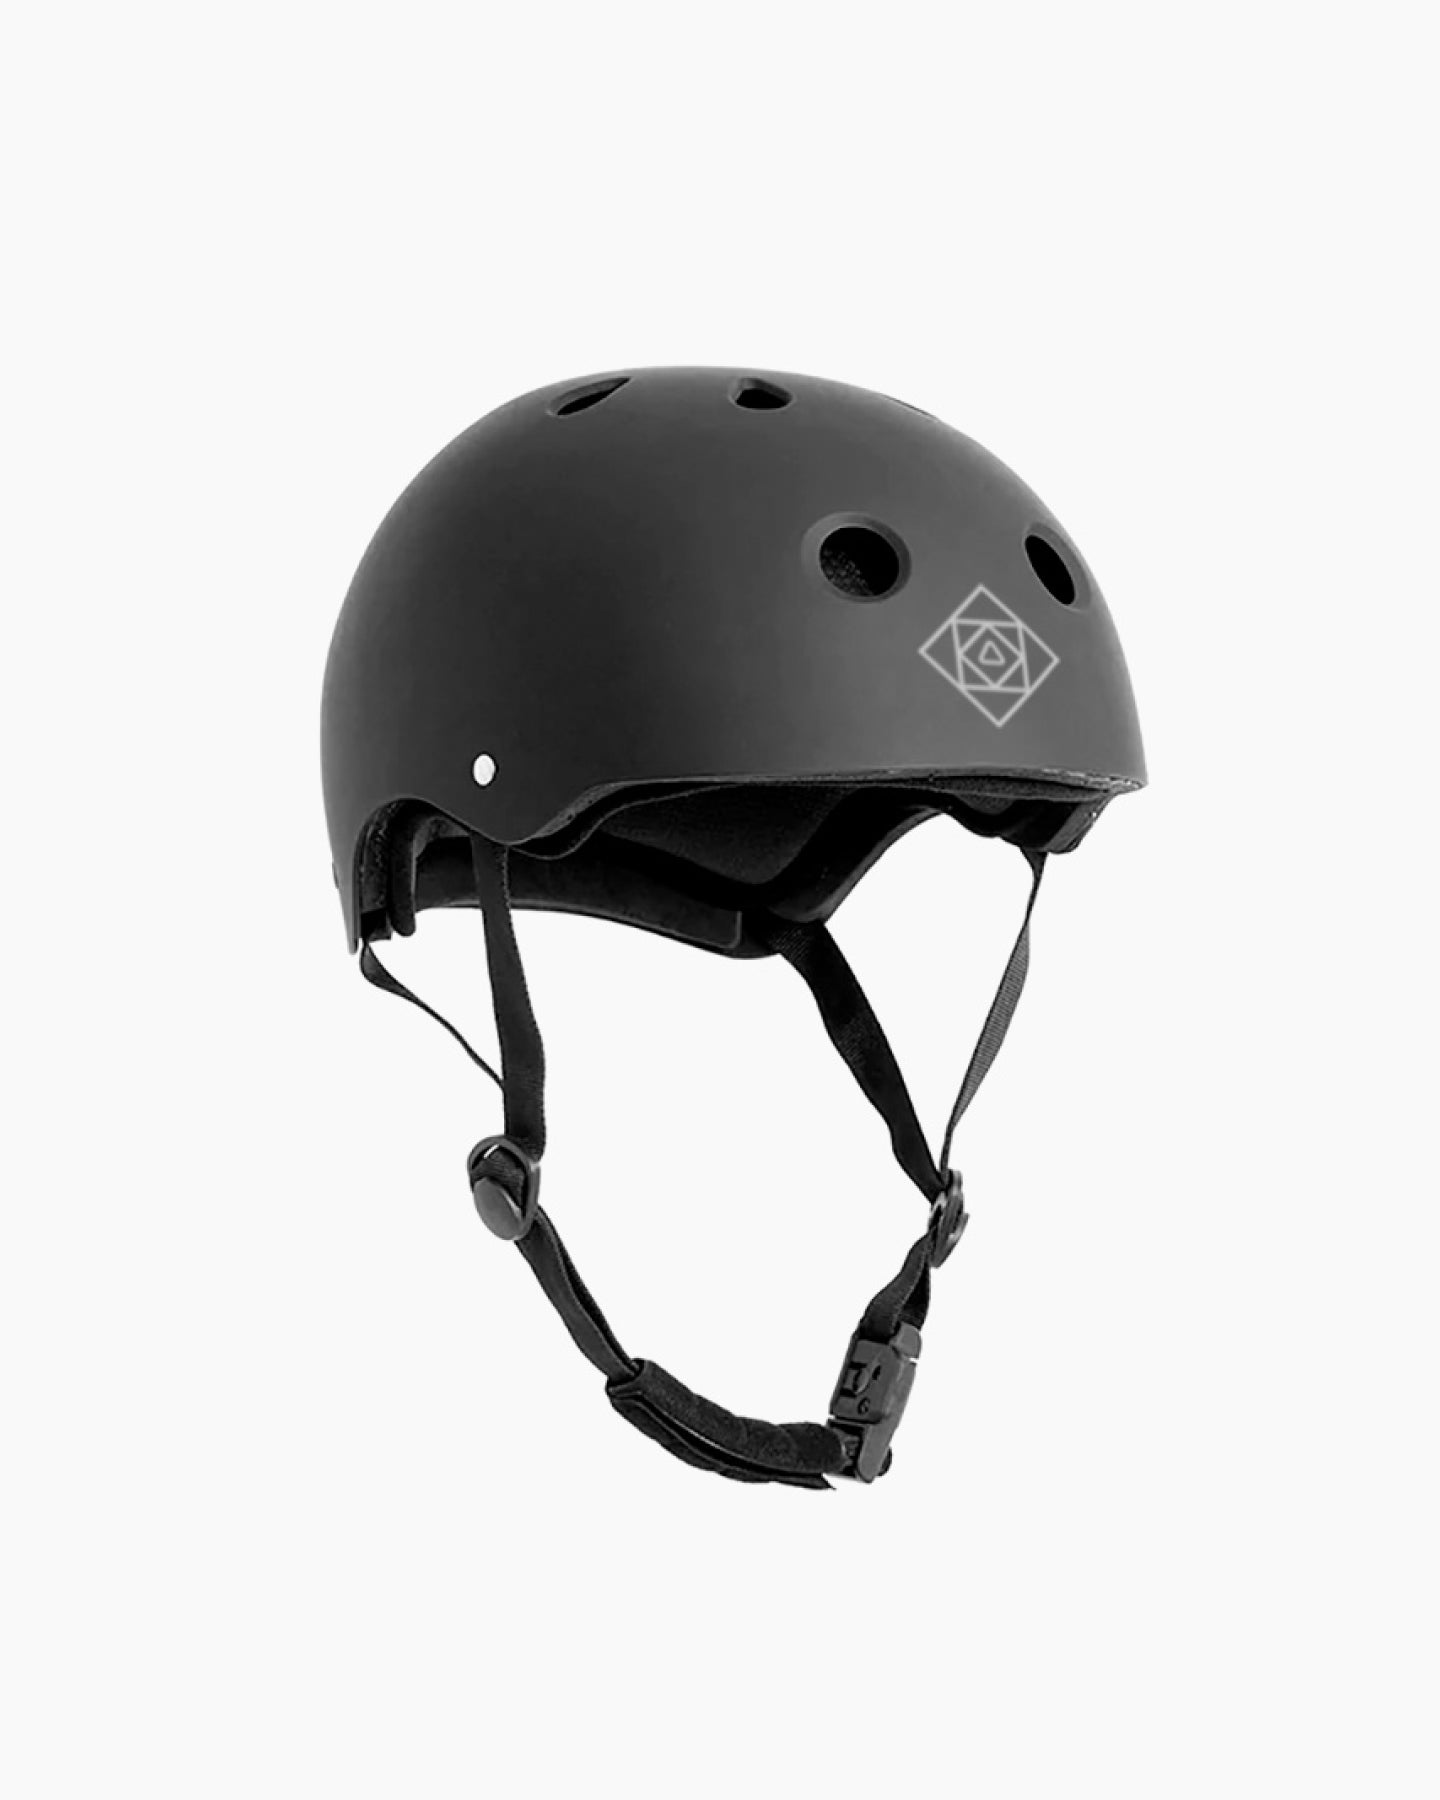 Follow Pro Helmet - Unity Black